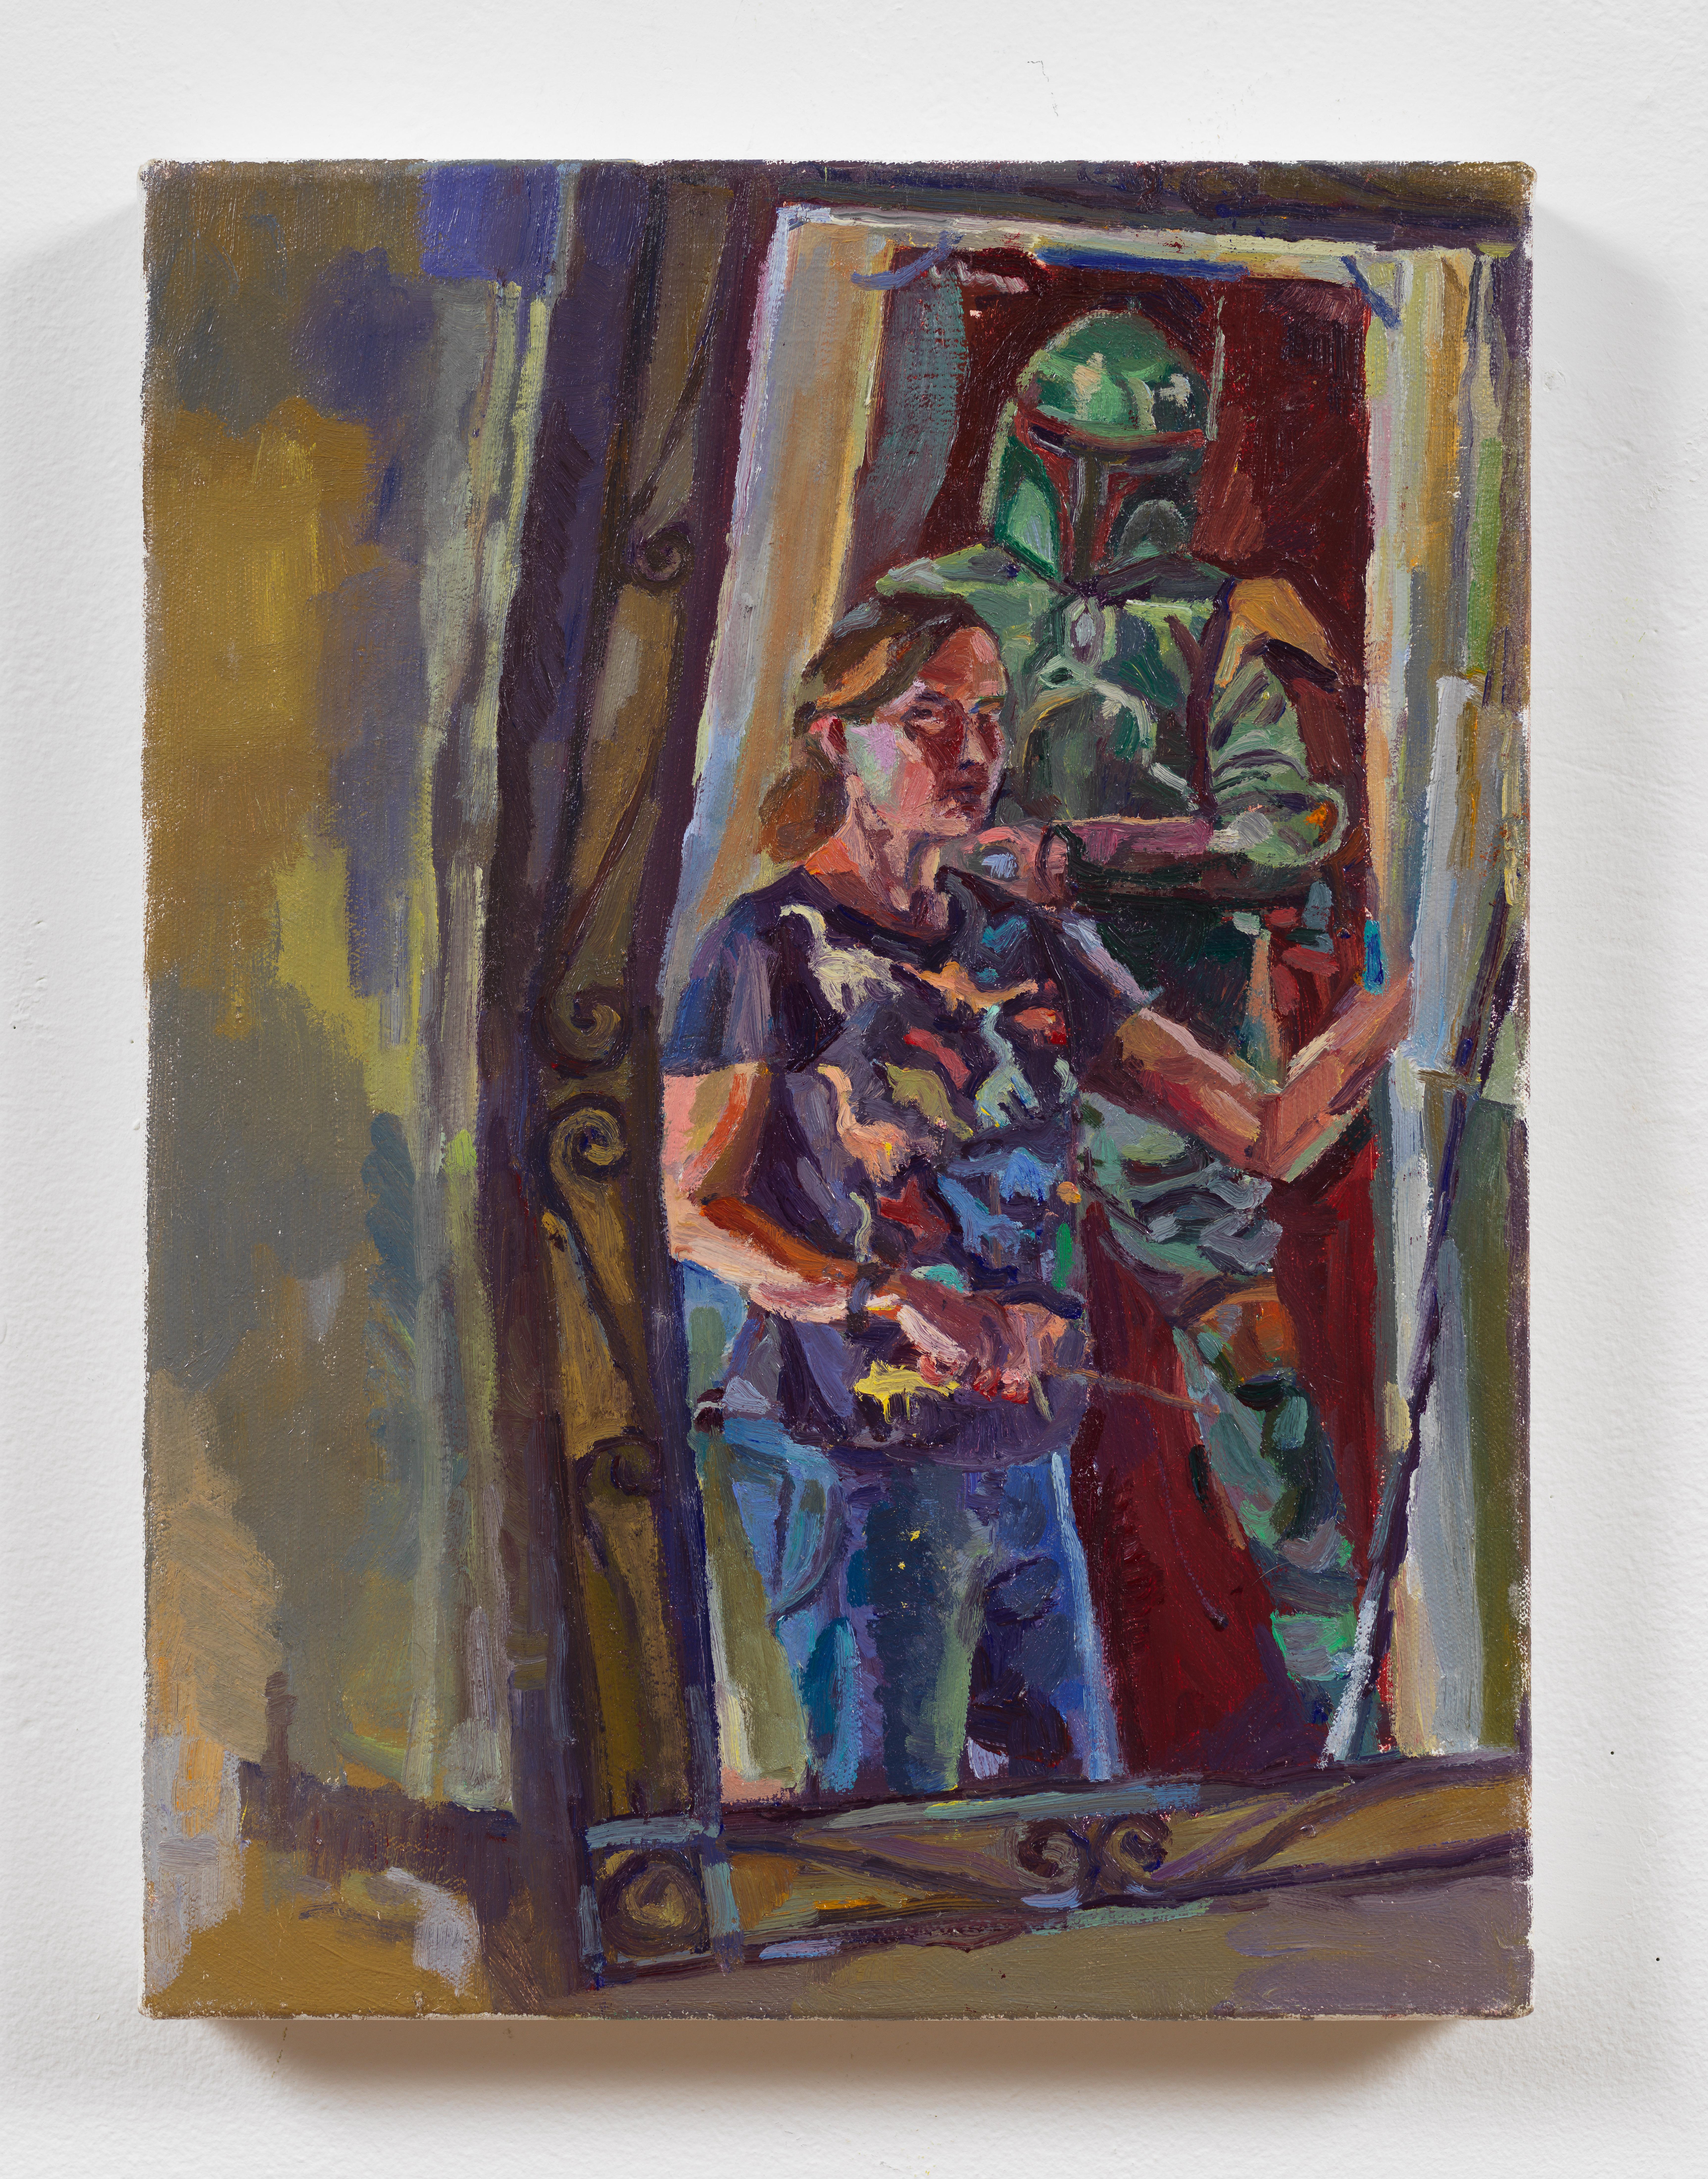 Boba Fett vs. Mère artiste, peinture colorée dans un miroir avec costume d'armure